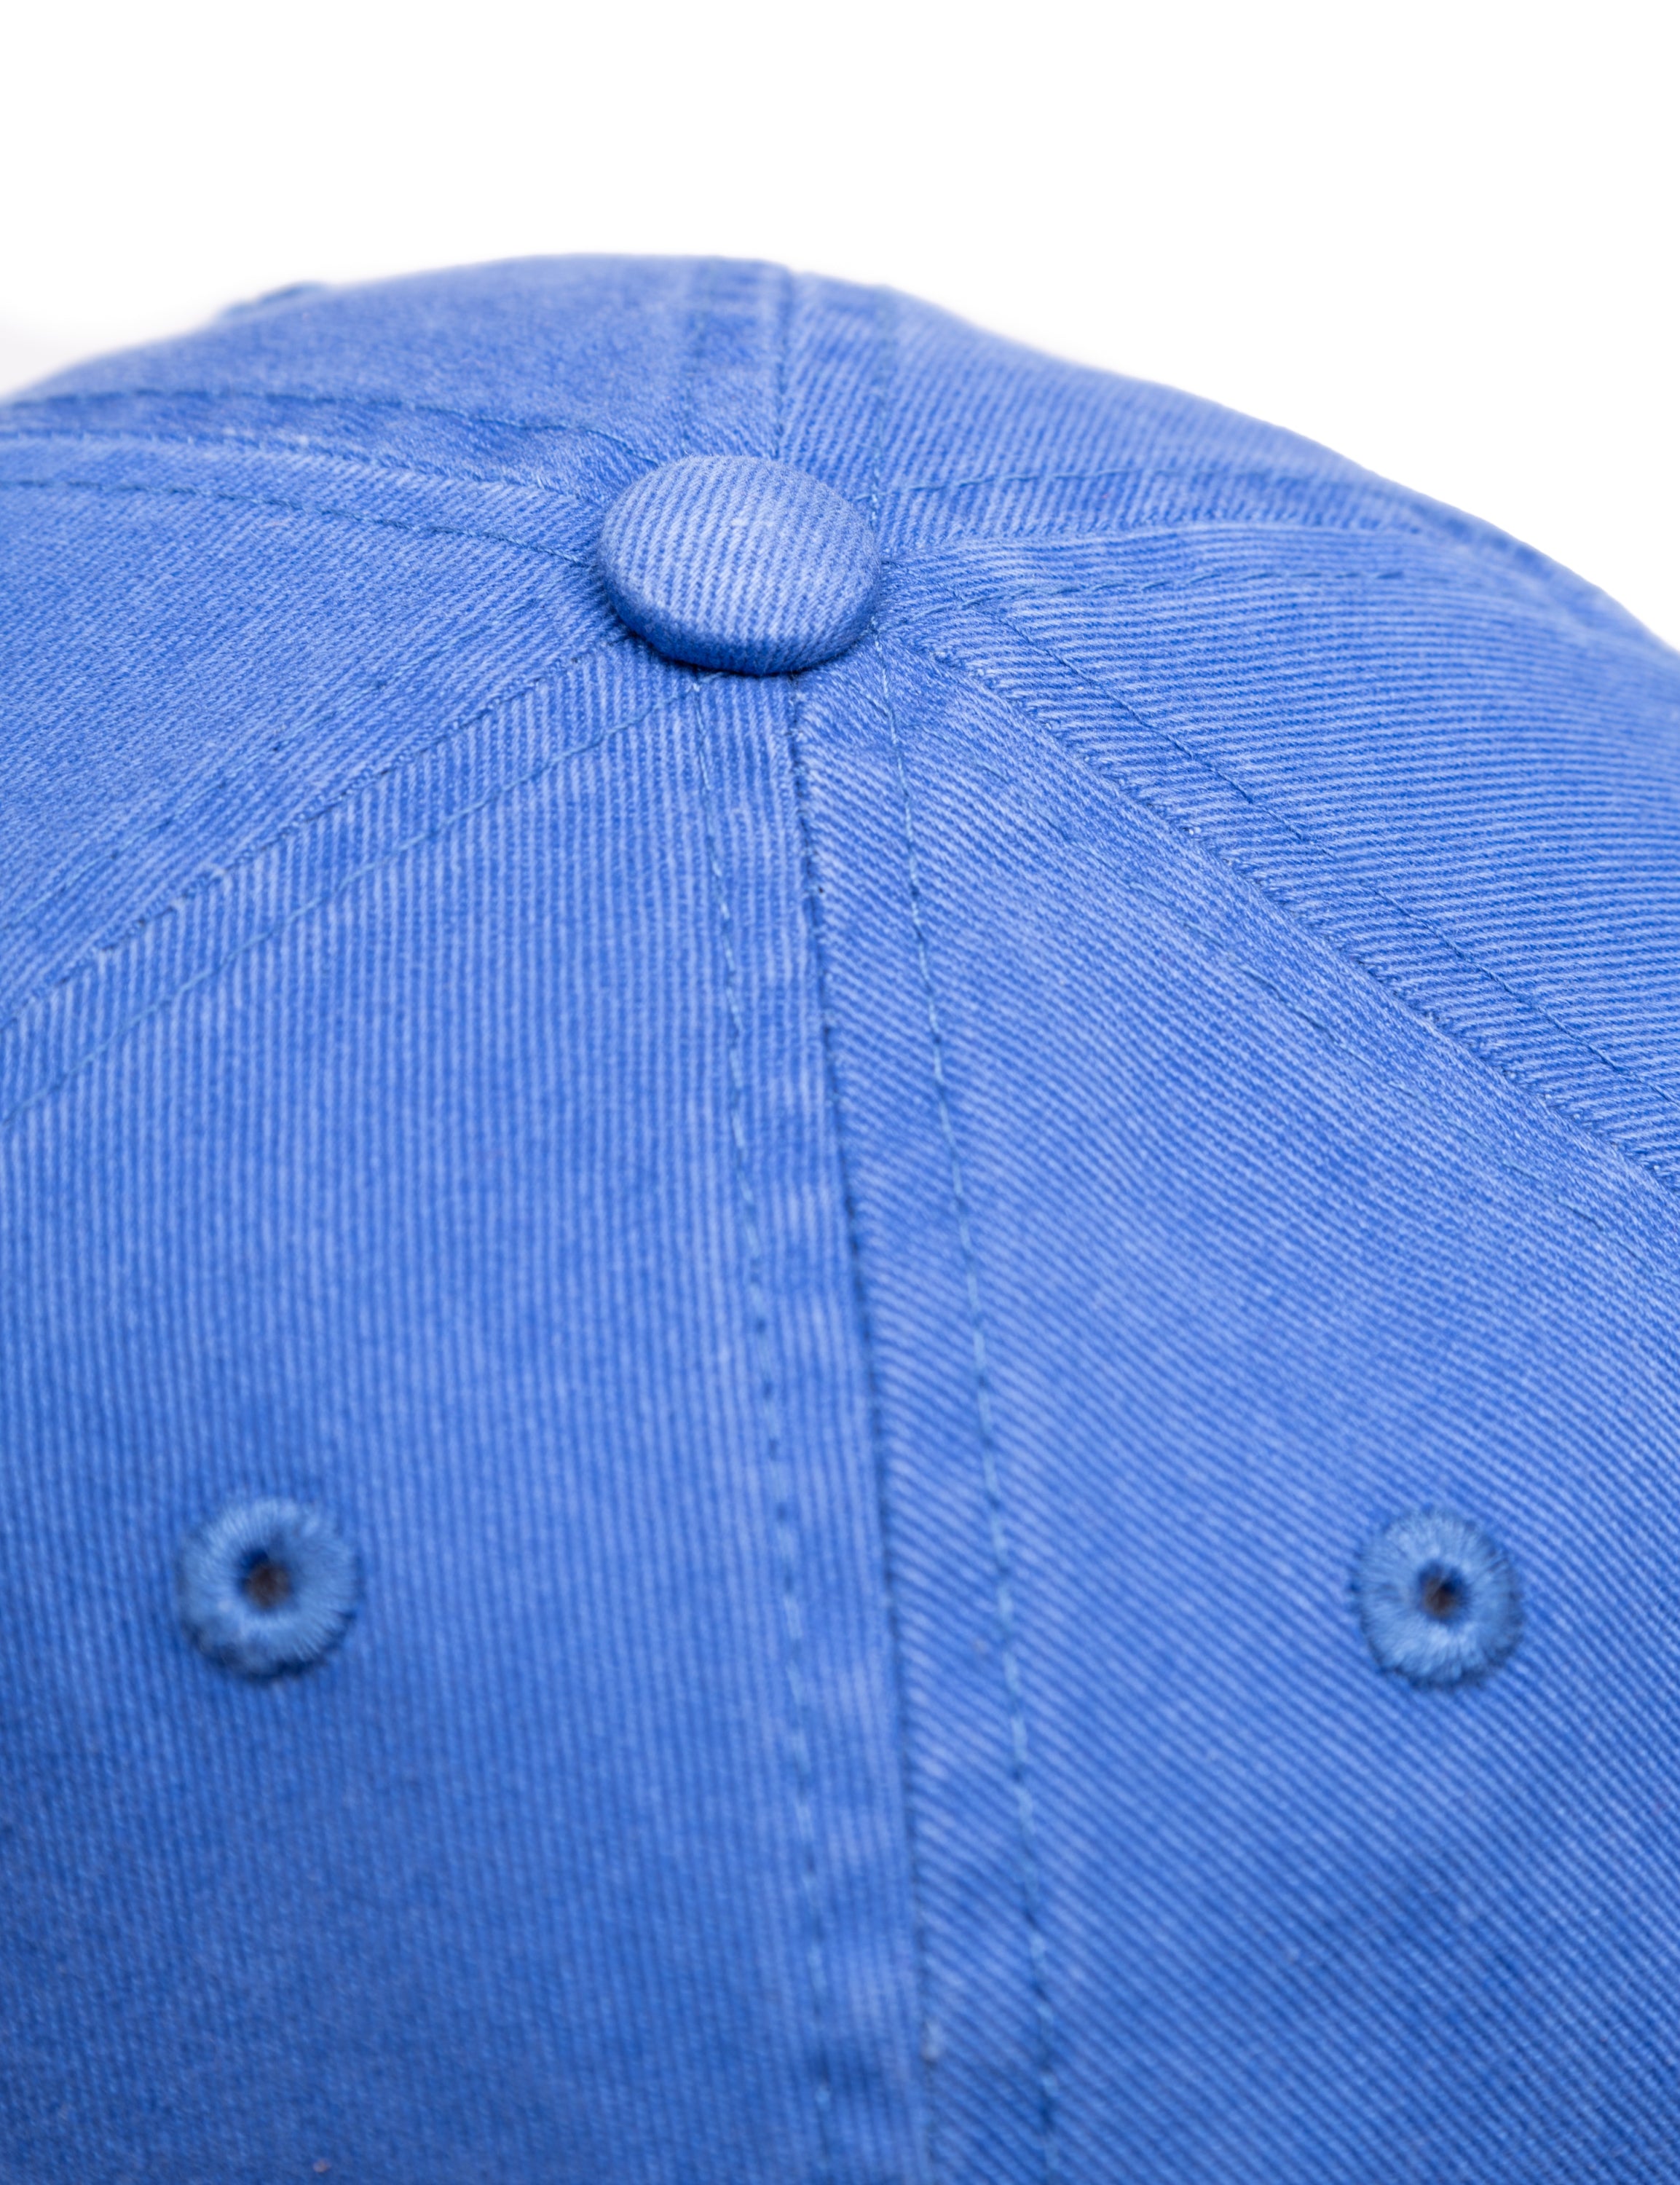 FORÉT HAWK WASHED CAP - BLUE